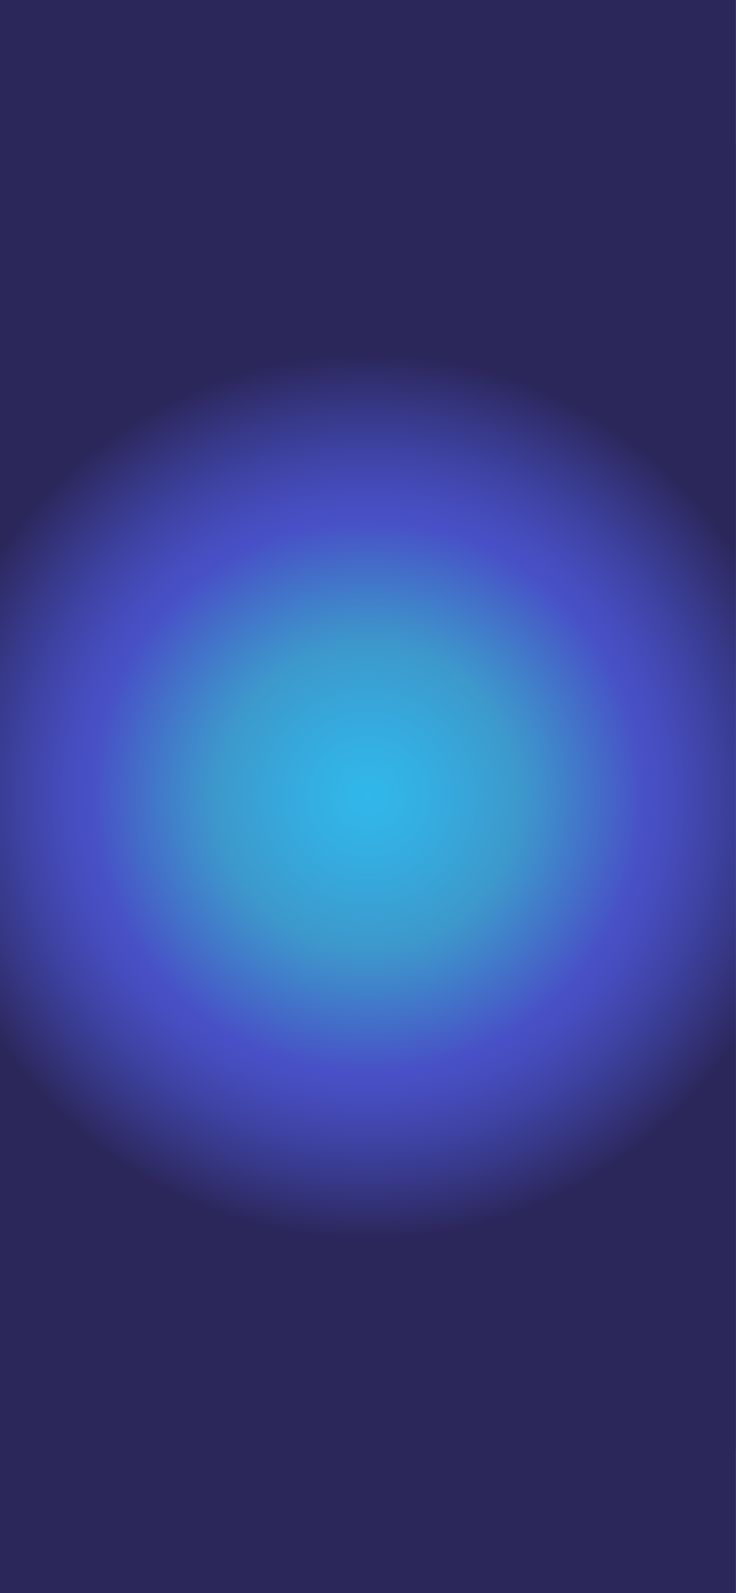 Dark Blue Aura Wallpaper. Blue sky wallpaper, Retro wallpaper iphone, Aura colors